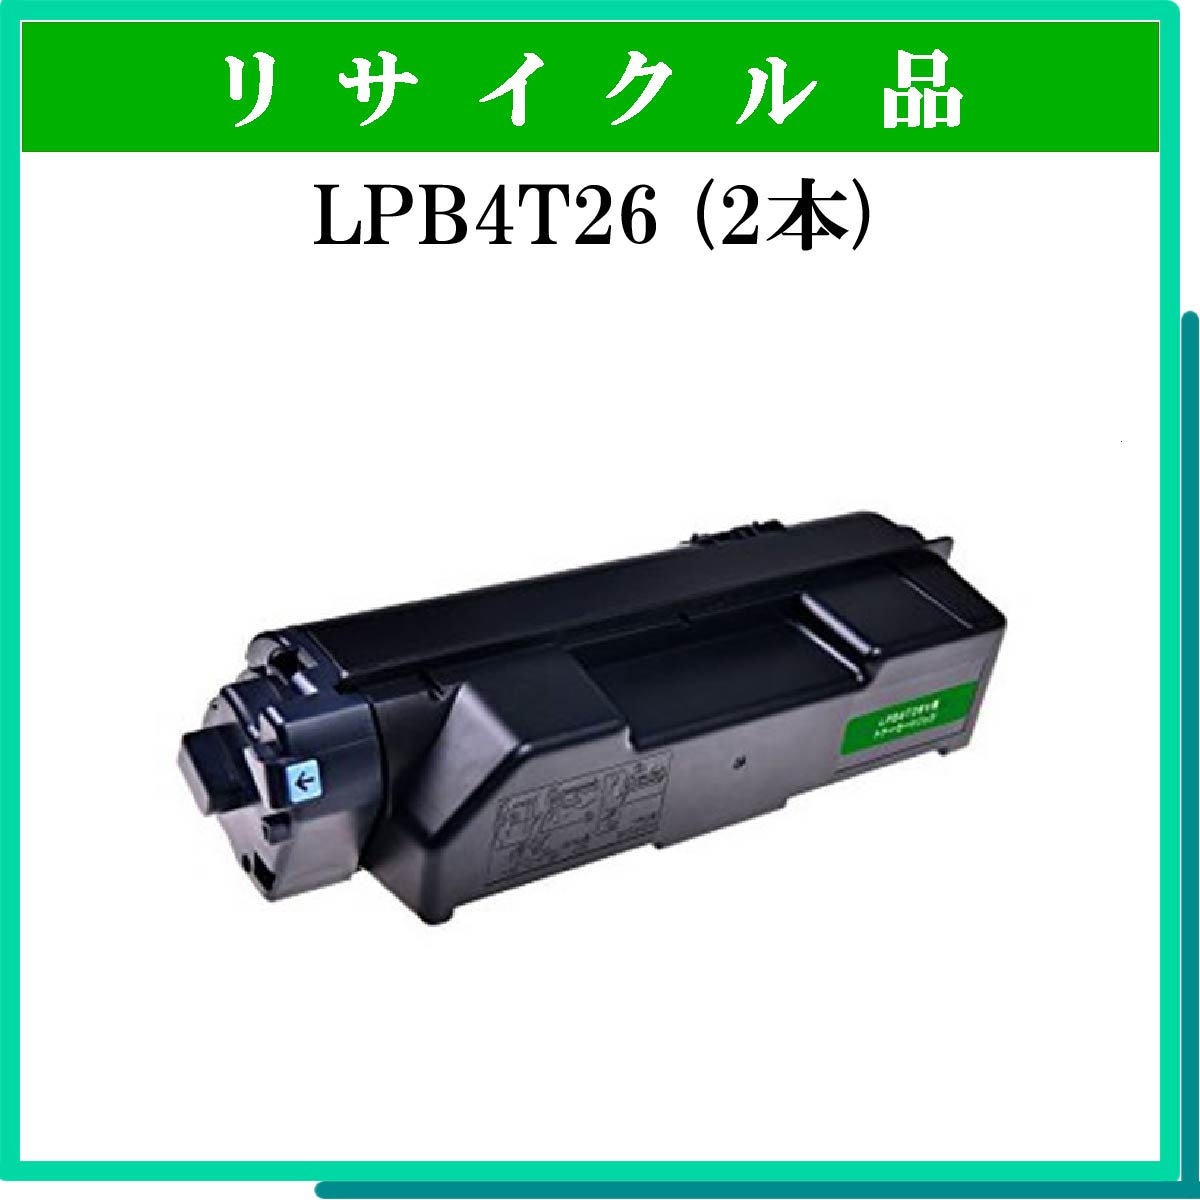 PR-L8500-12